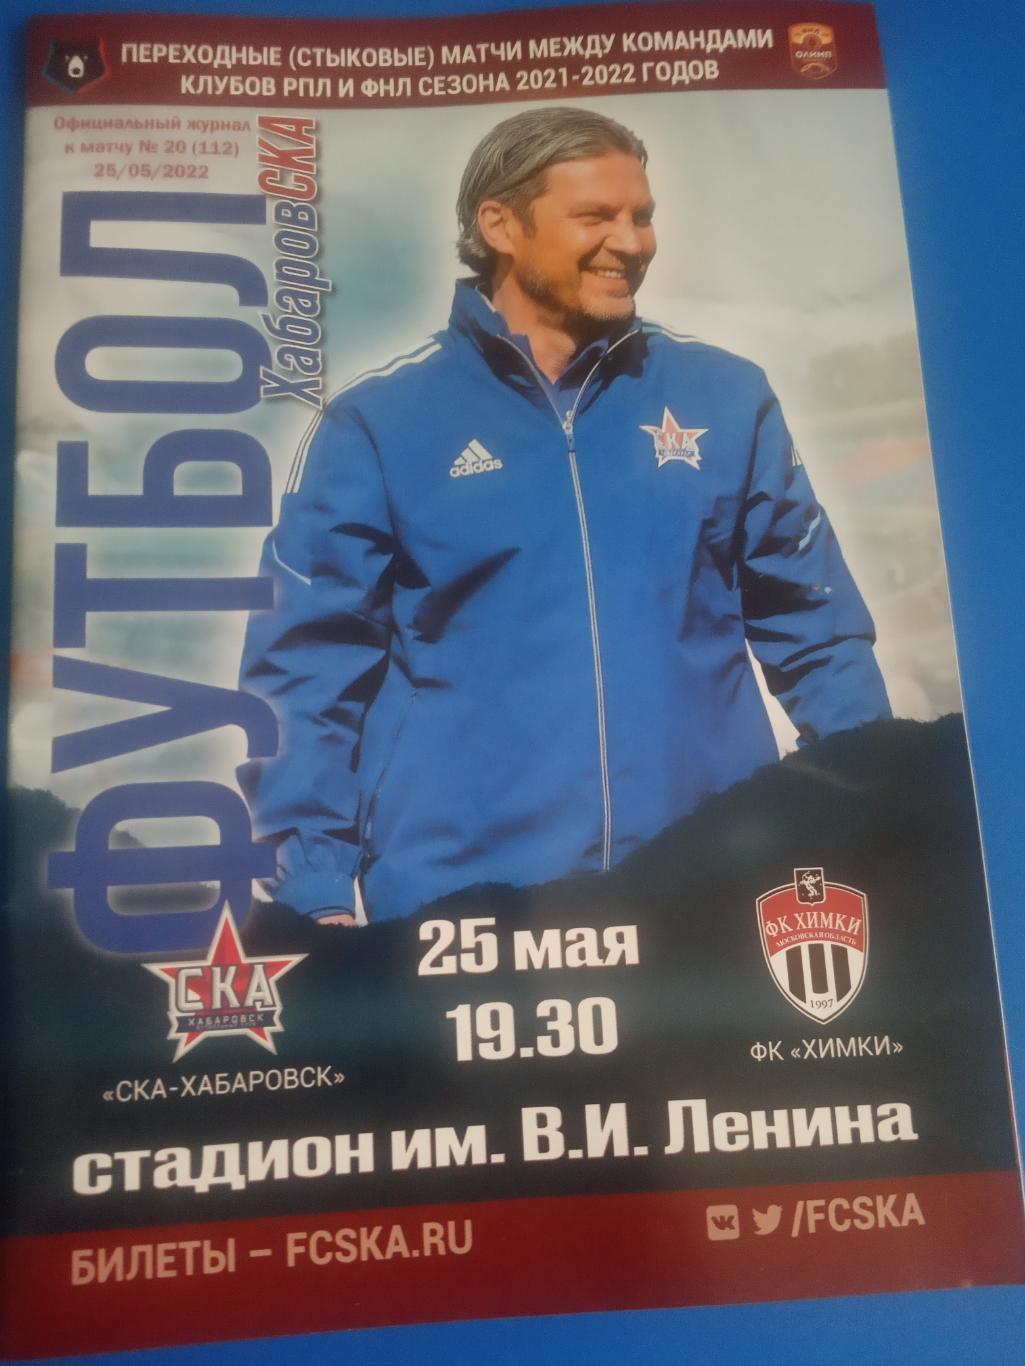 СКА Хабаровск - ФК Химки 25 мая 2022